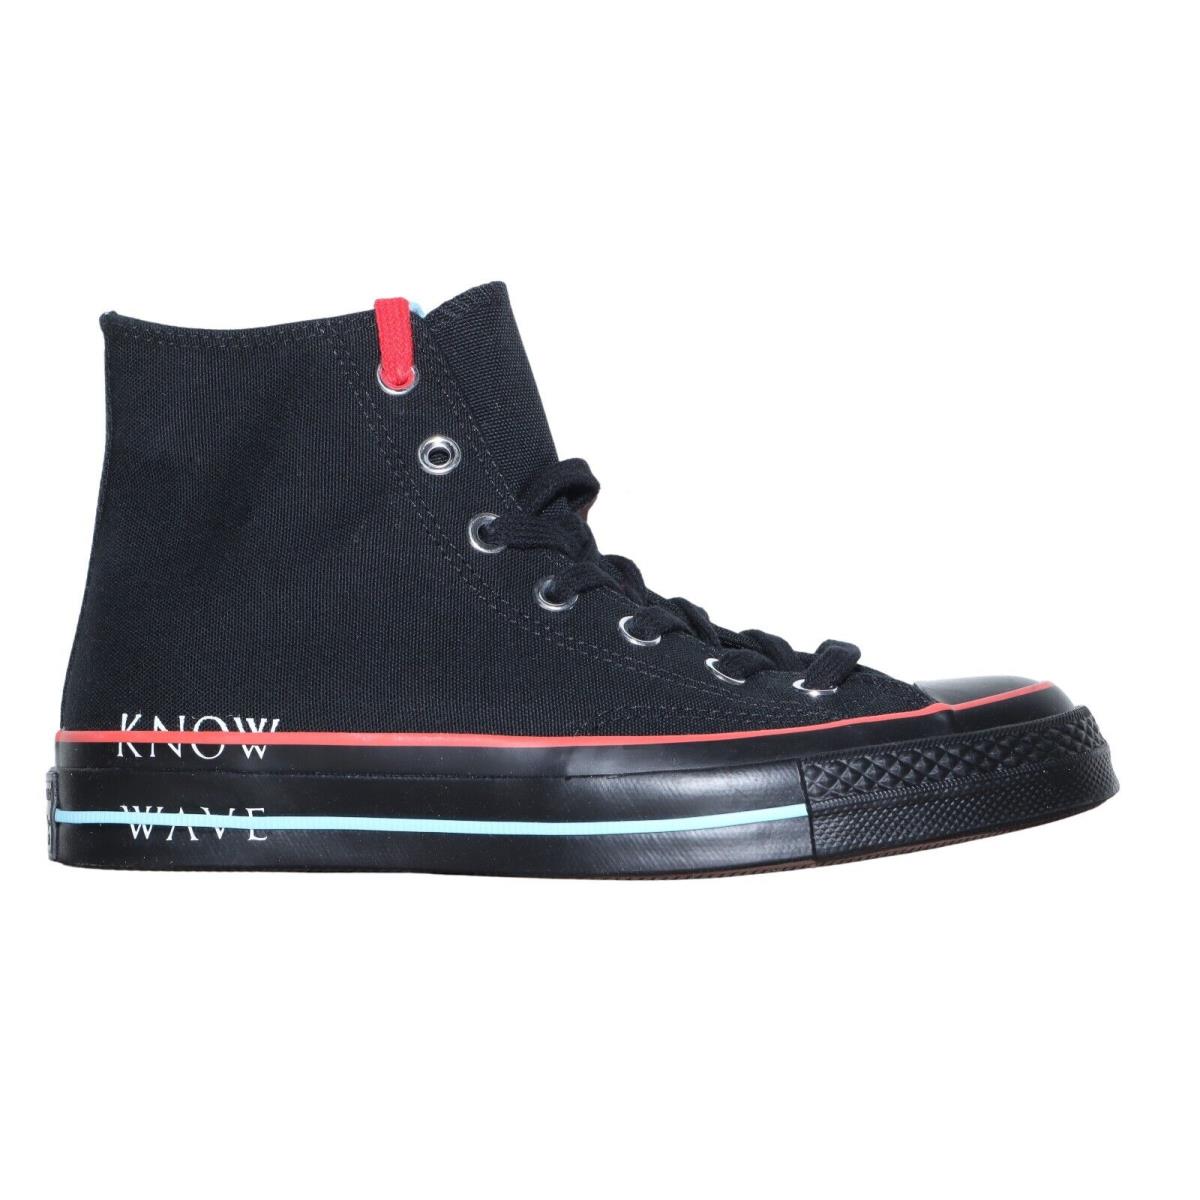 Converse x Know Wave Black Blue Red Chuck 70 HI Unisex Size M 5 W 7 161378C Shoe - Black